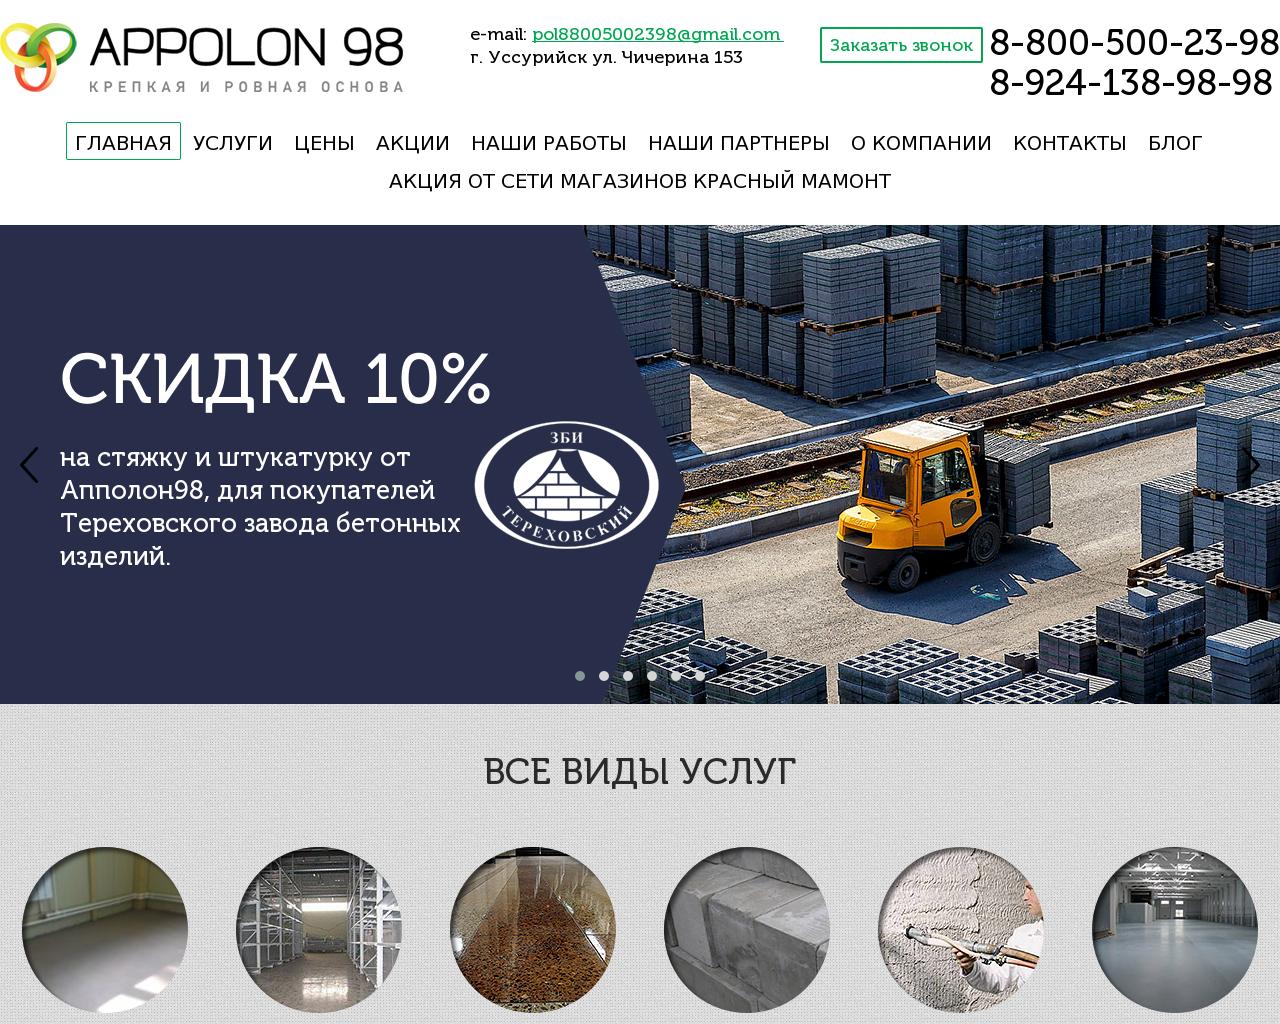 Изображение сайта appolon98.ru в разрешении 1280x1024